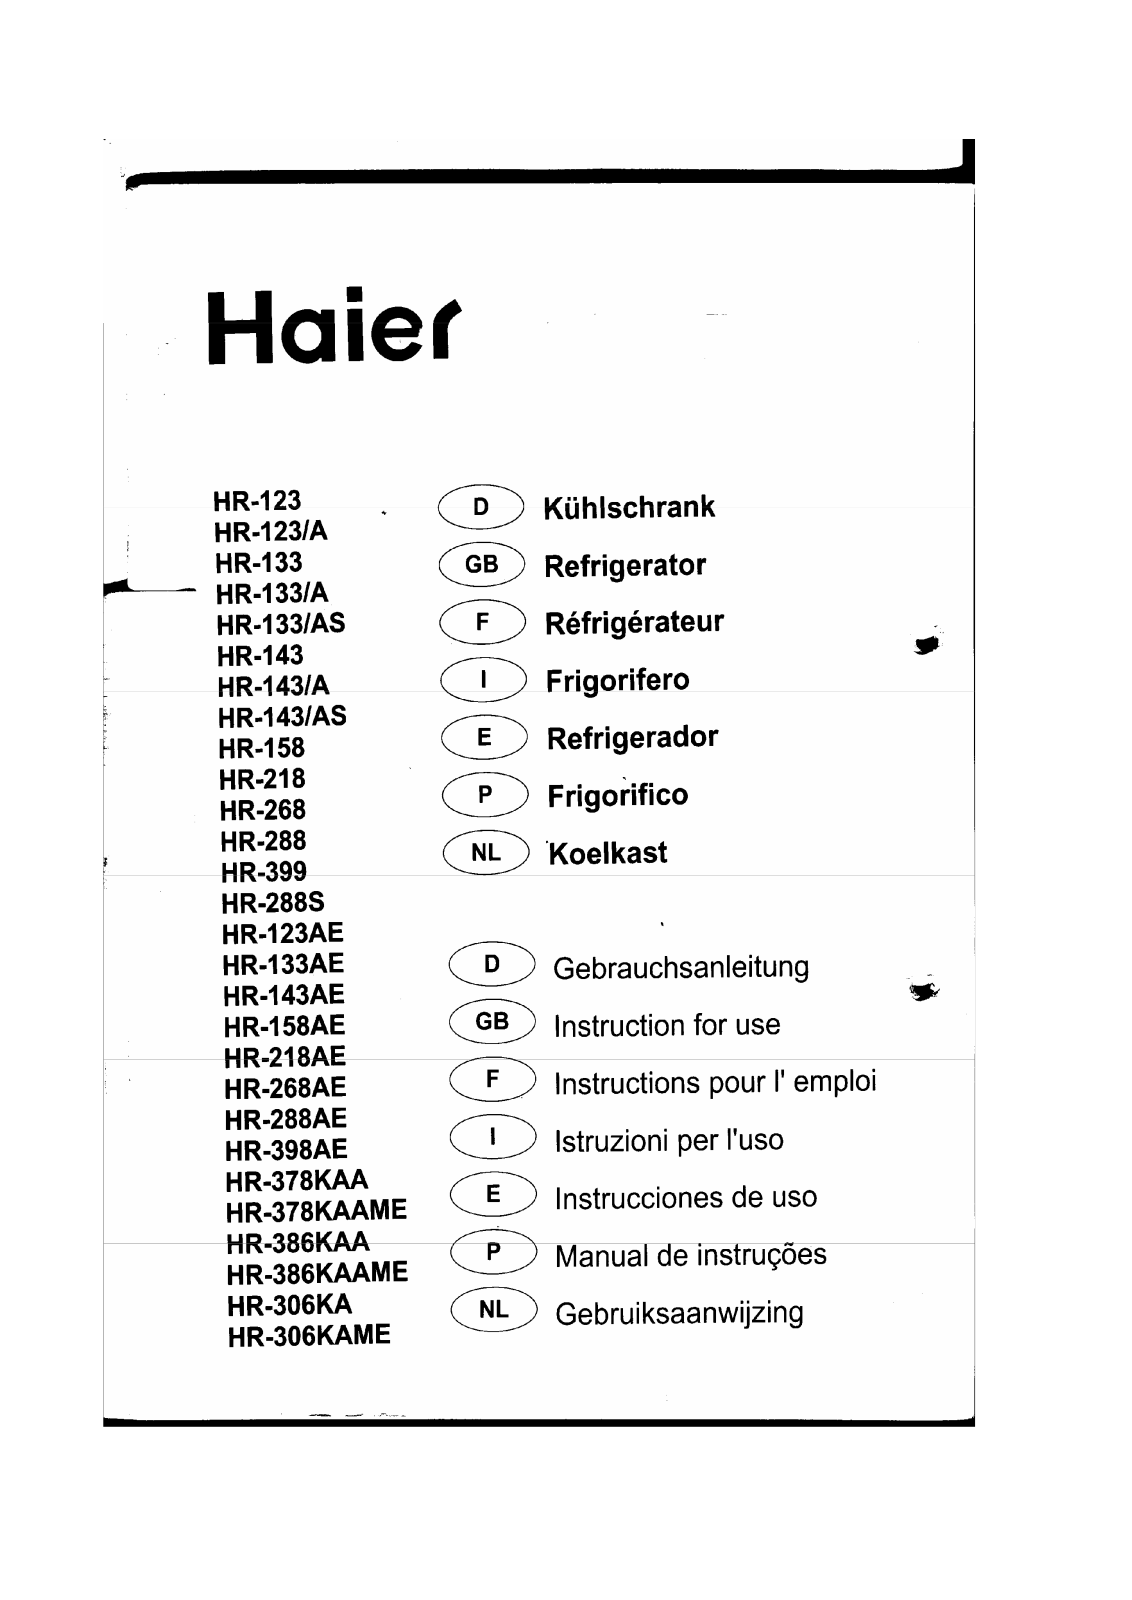 Haier HR-288AE, HR-158, HR SERIES, HR-288, HR-398AE User Manual